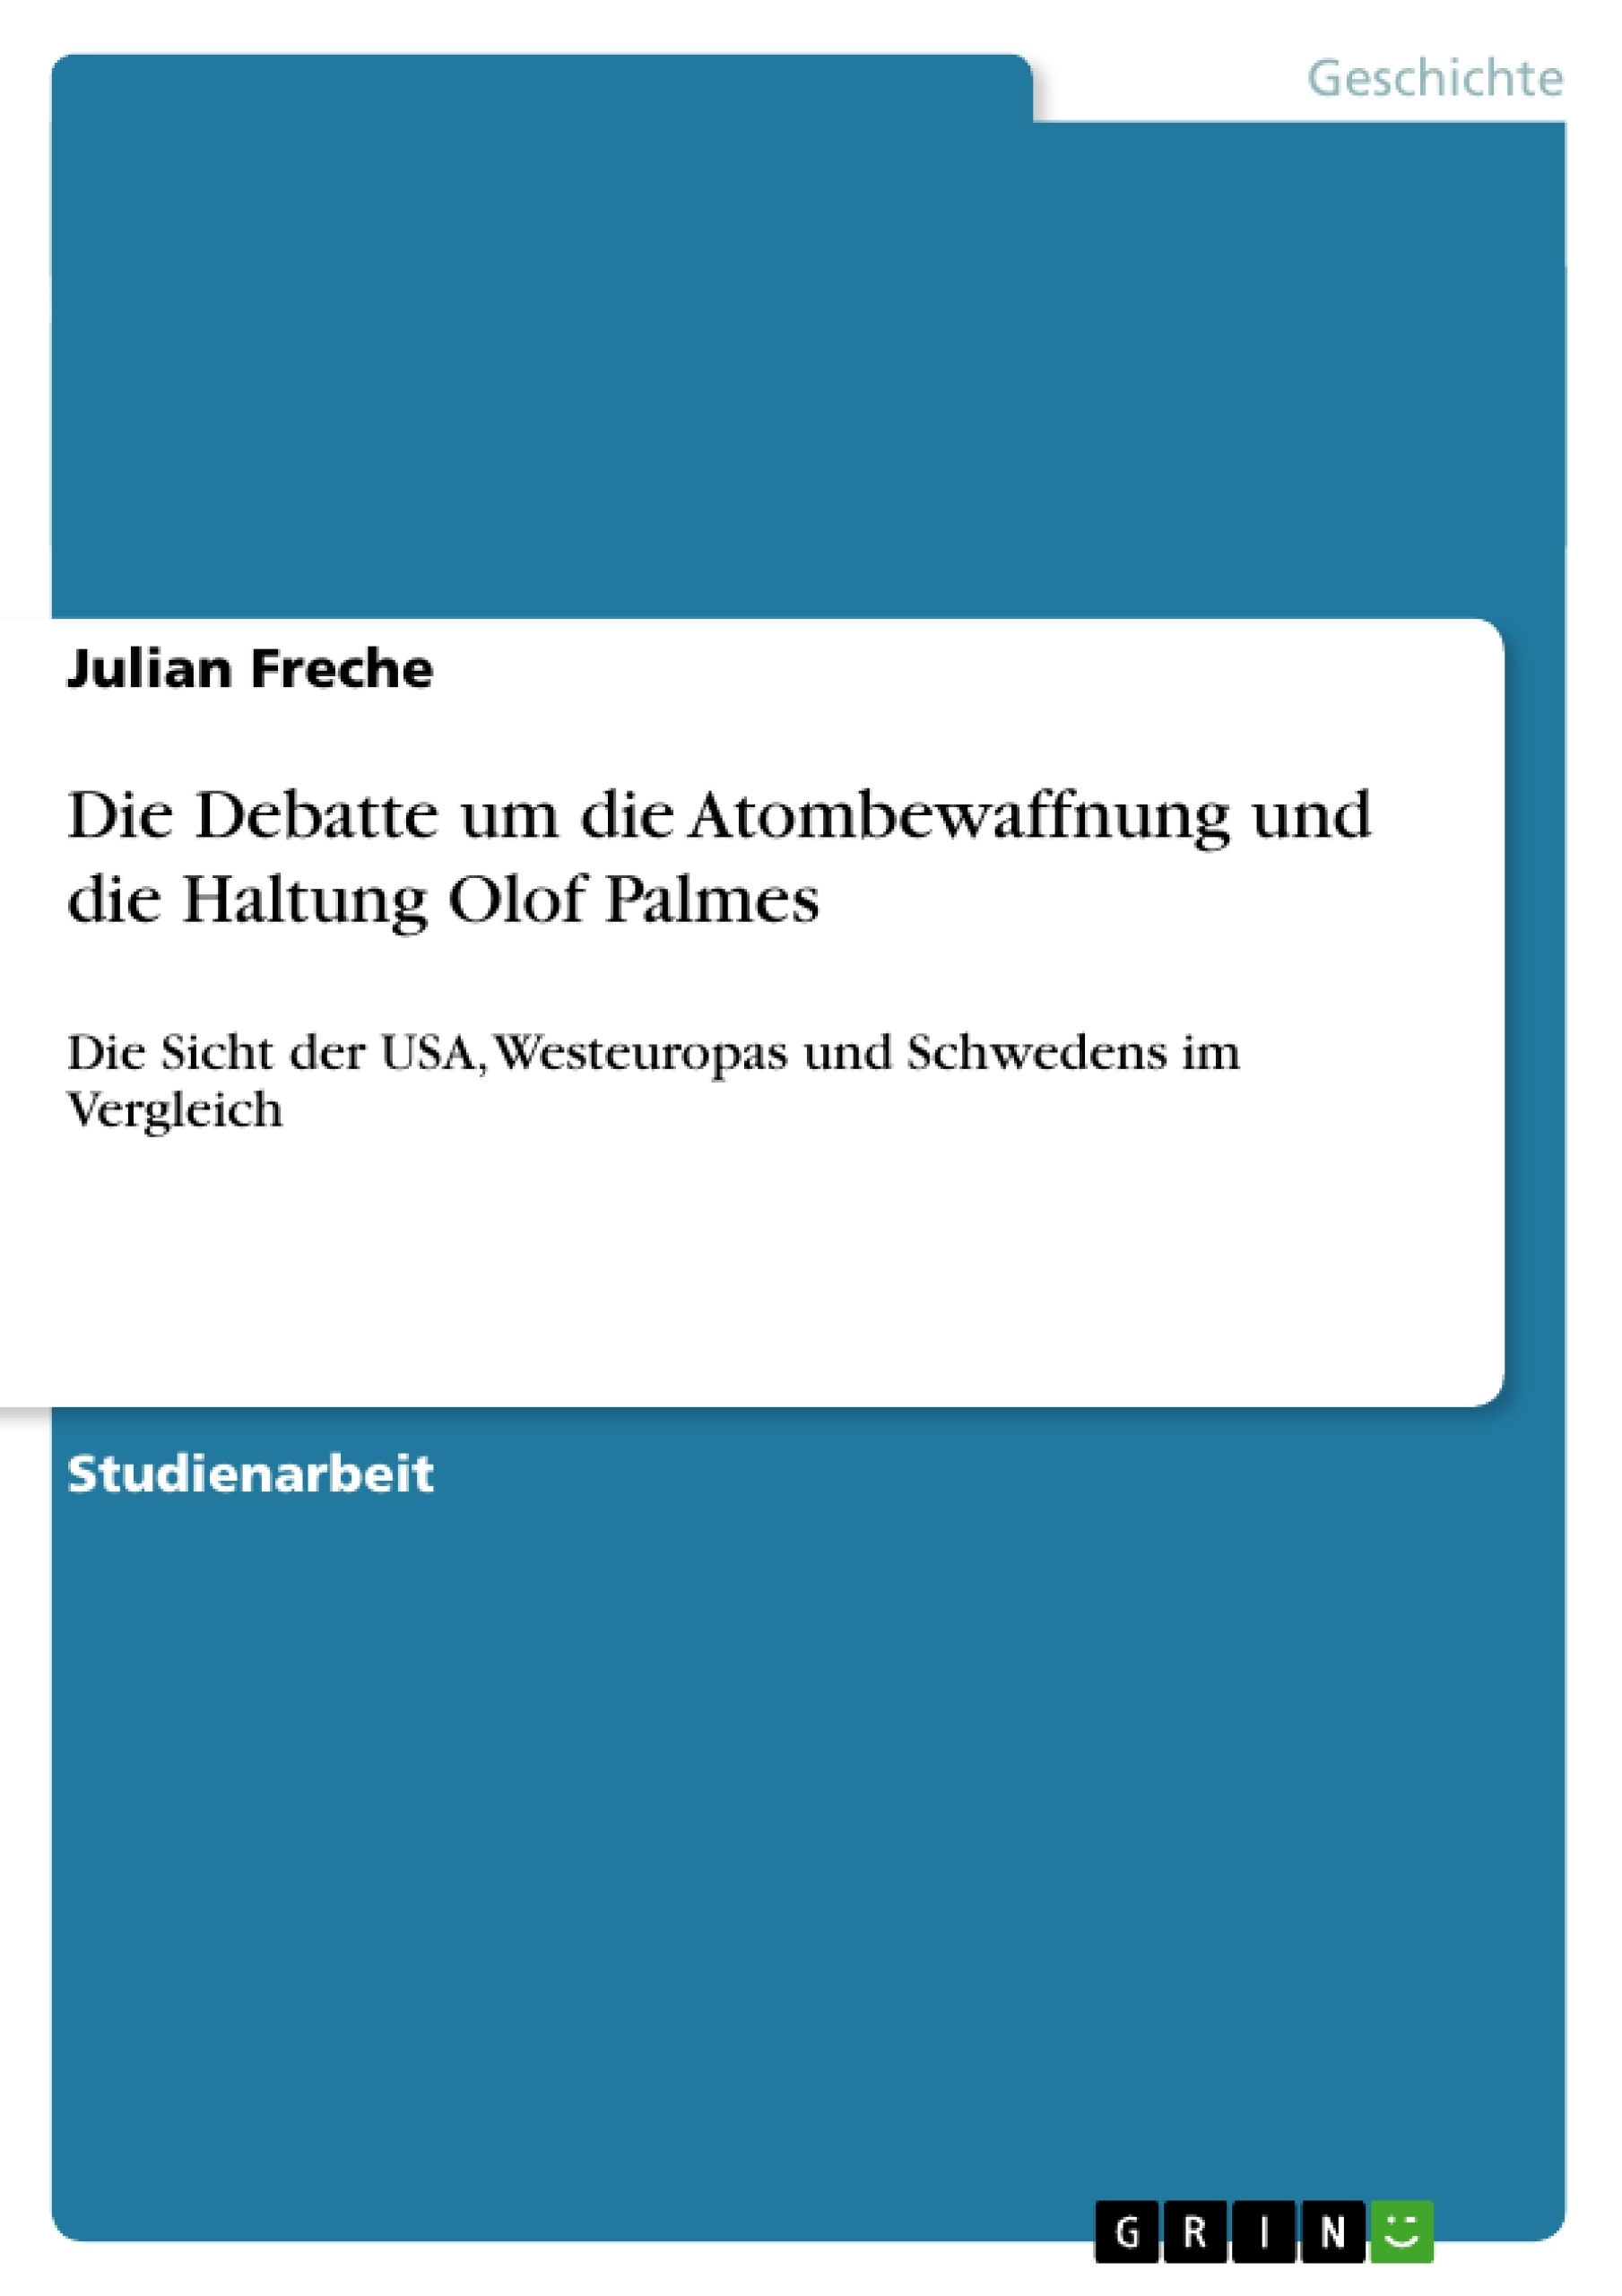 Title: Die Debatte um die Atombewaffnung und die Haltung Olof Palmes